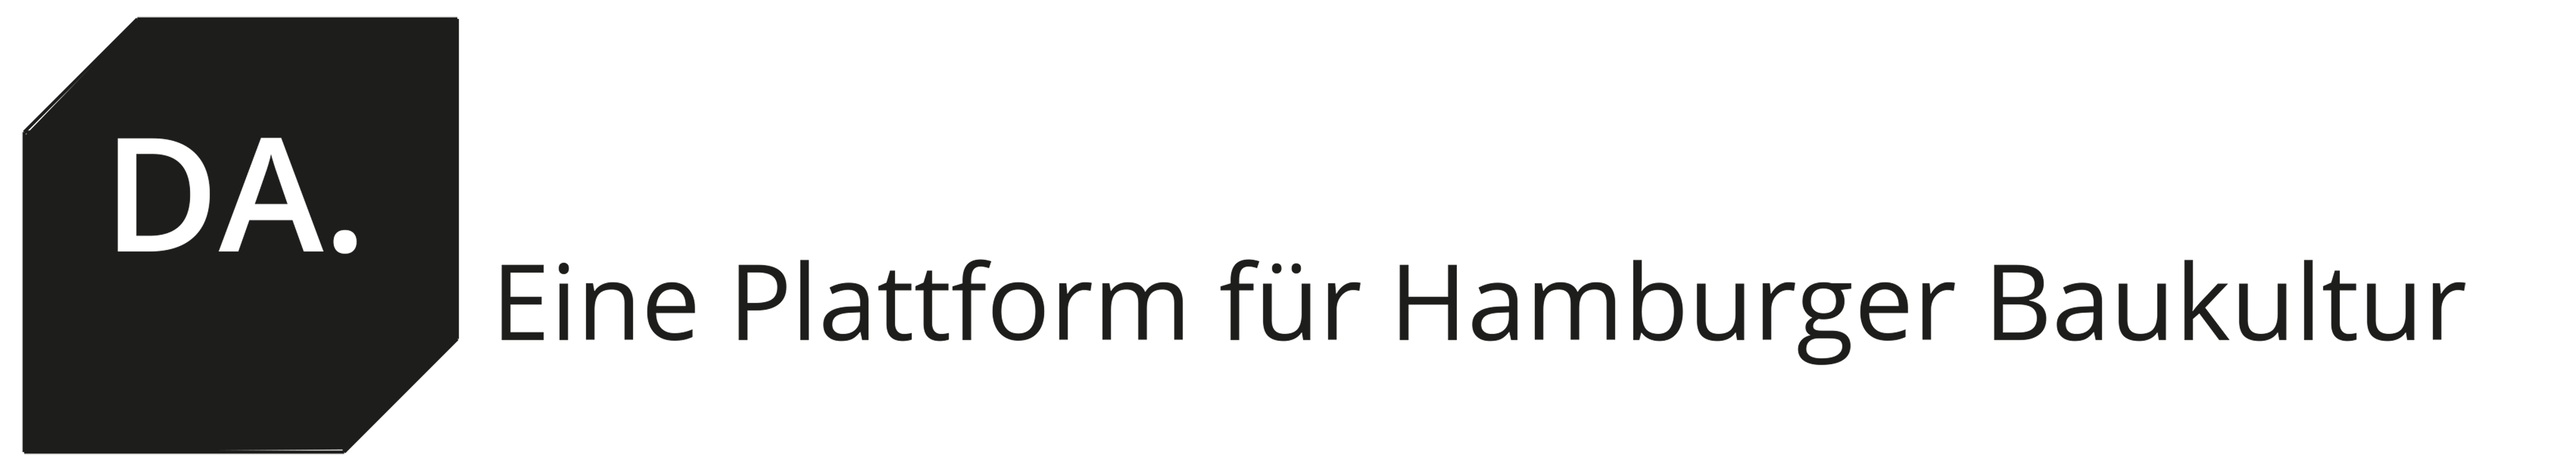 DA. Eine Plattform für Hamburger Baukultur